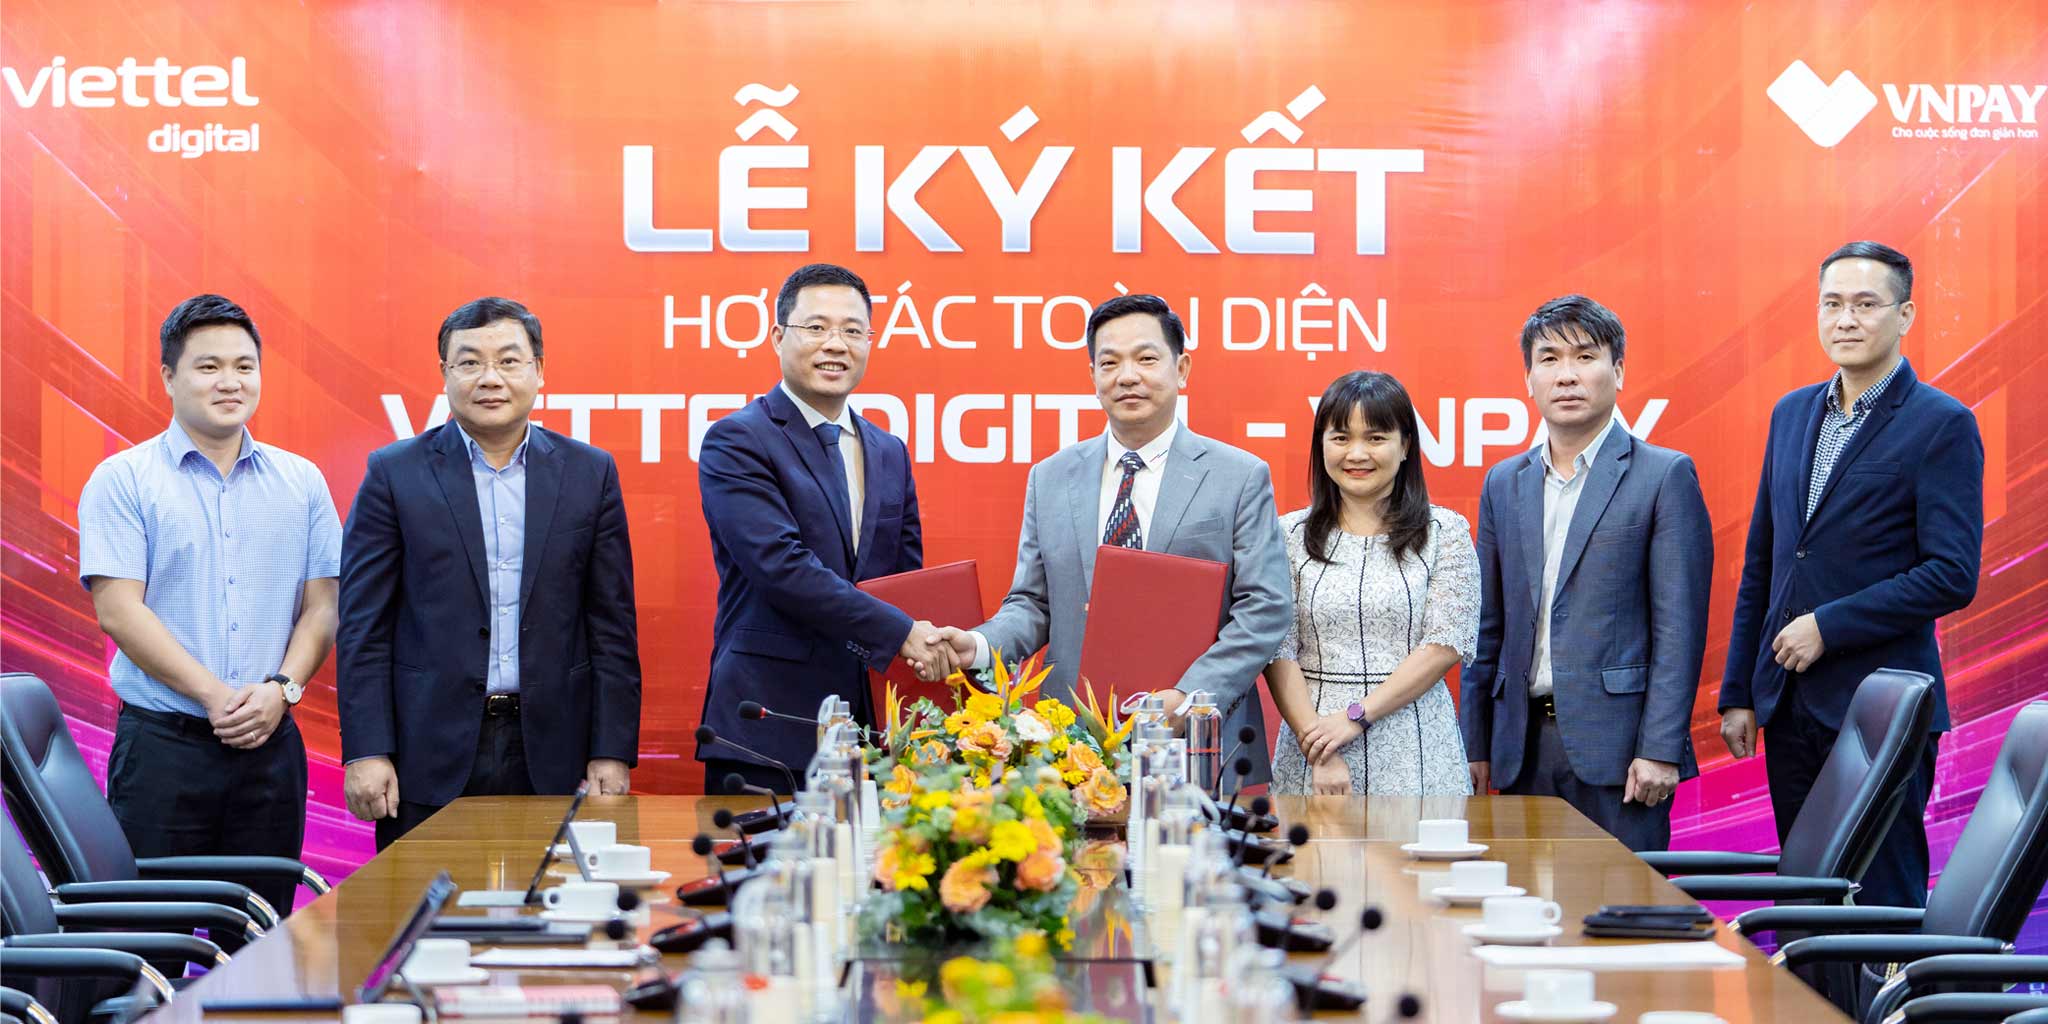 VNPAY và Viettel Digital công bố hợp tác chiến lược thúc đẩy thanh toán số tại Việt Nam